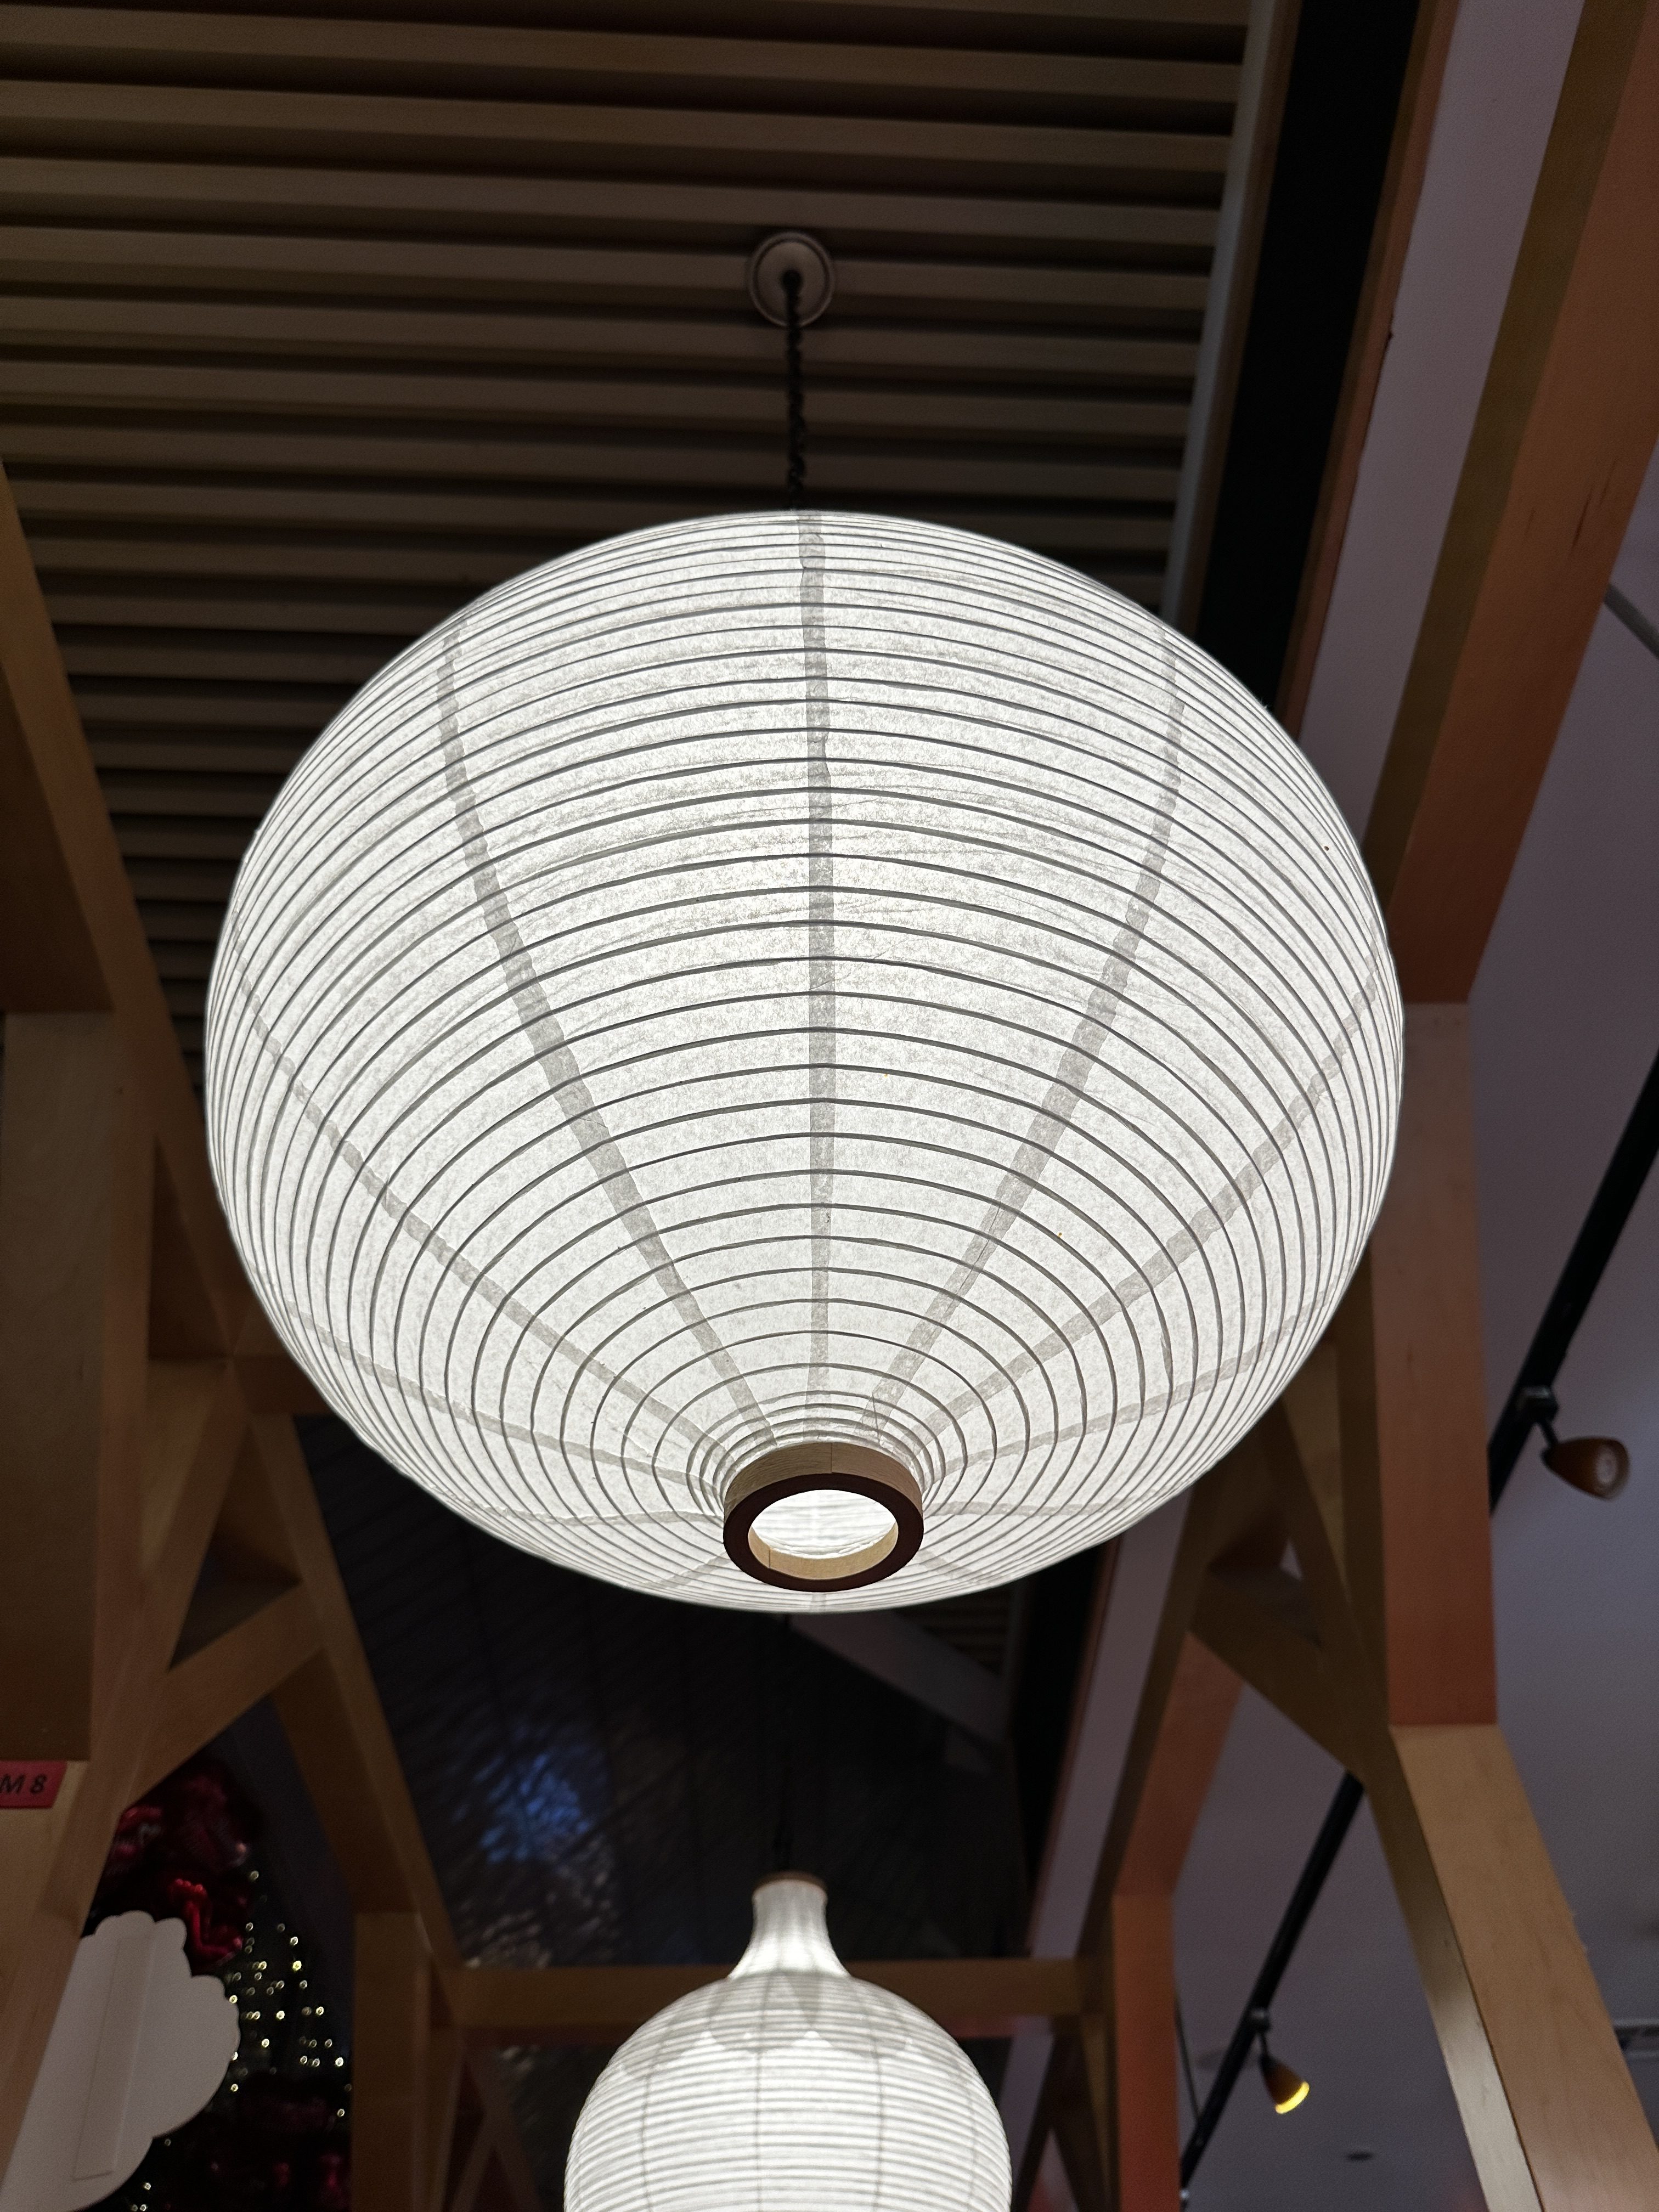 Restaurant lantern captured by iPhone 14 Pro